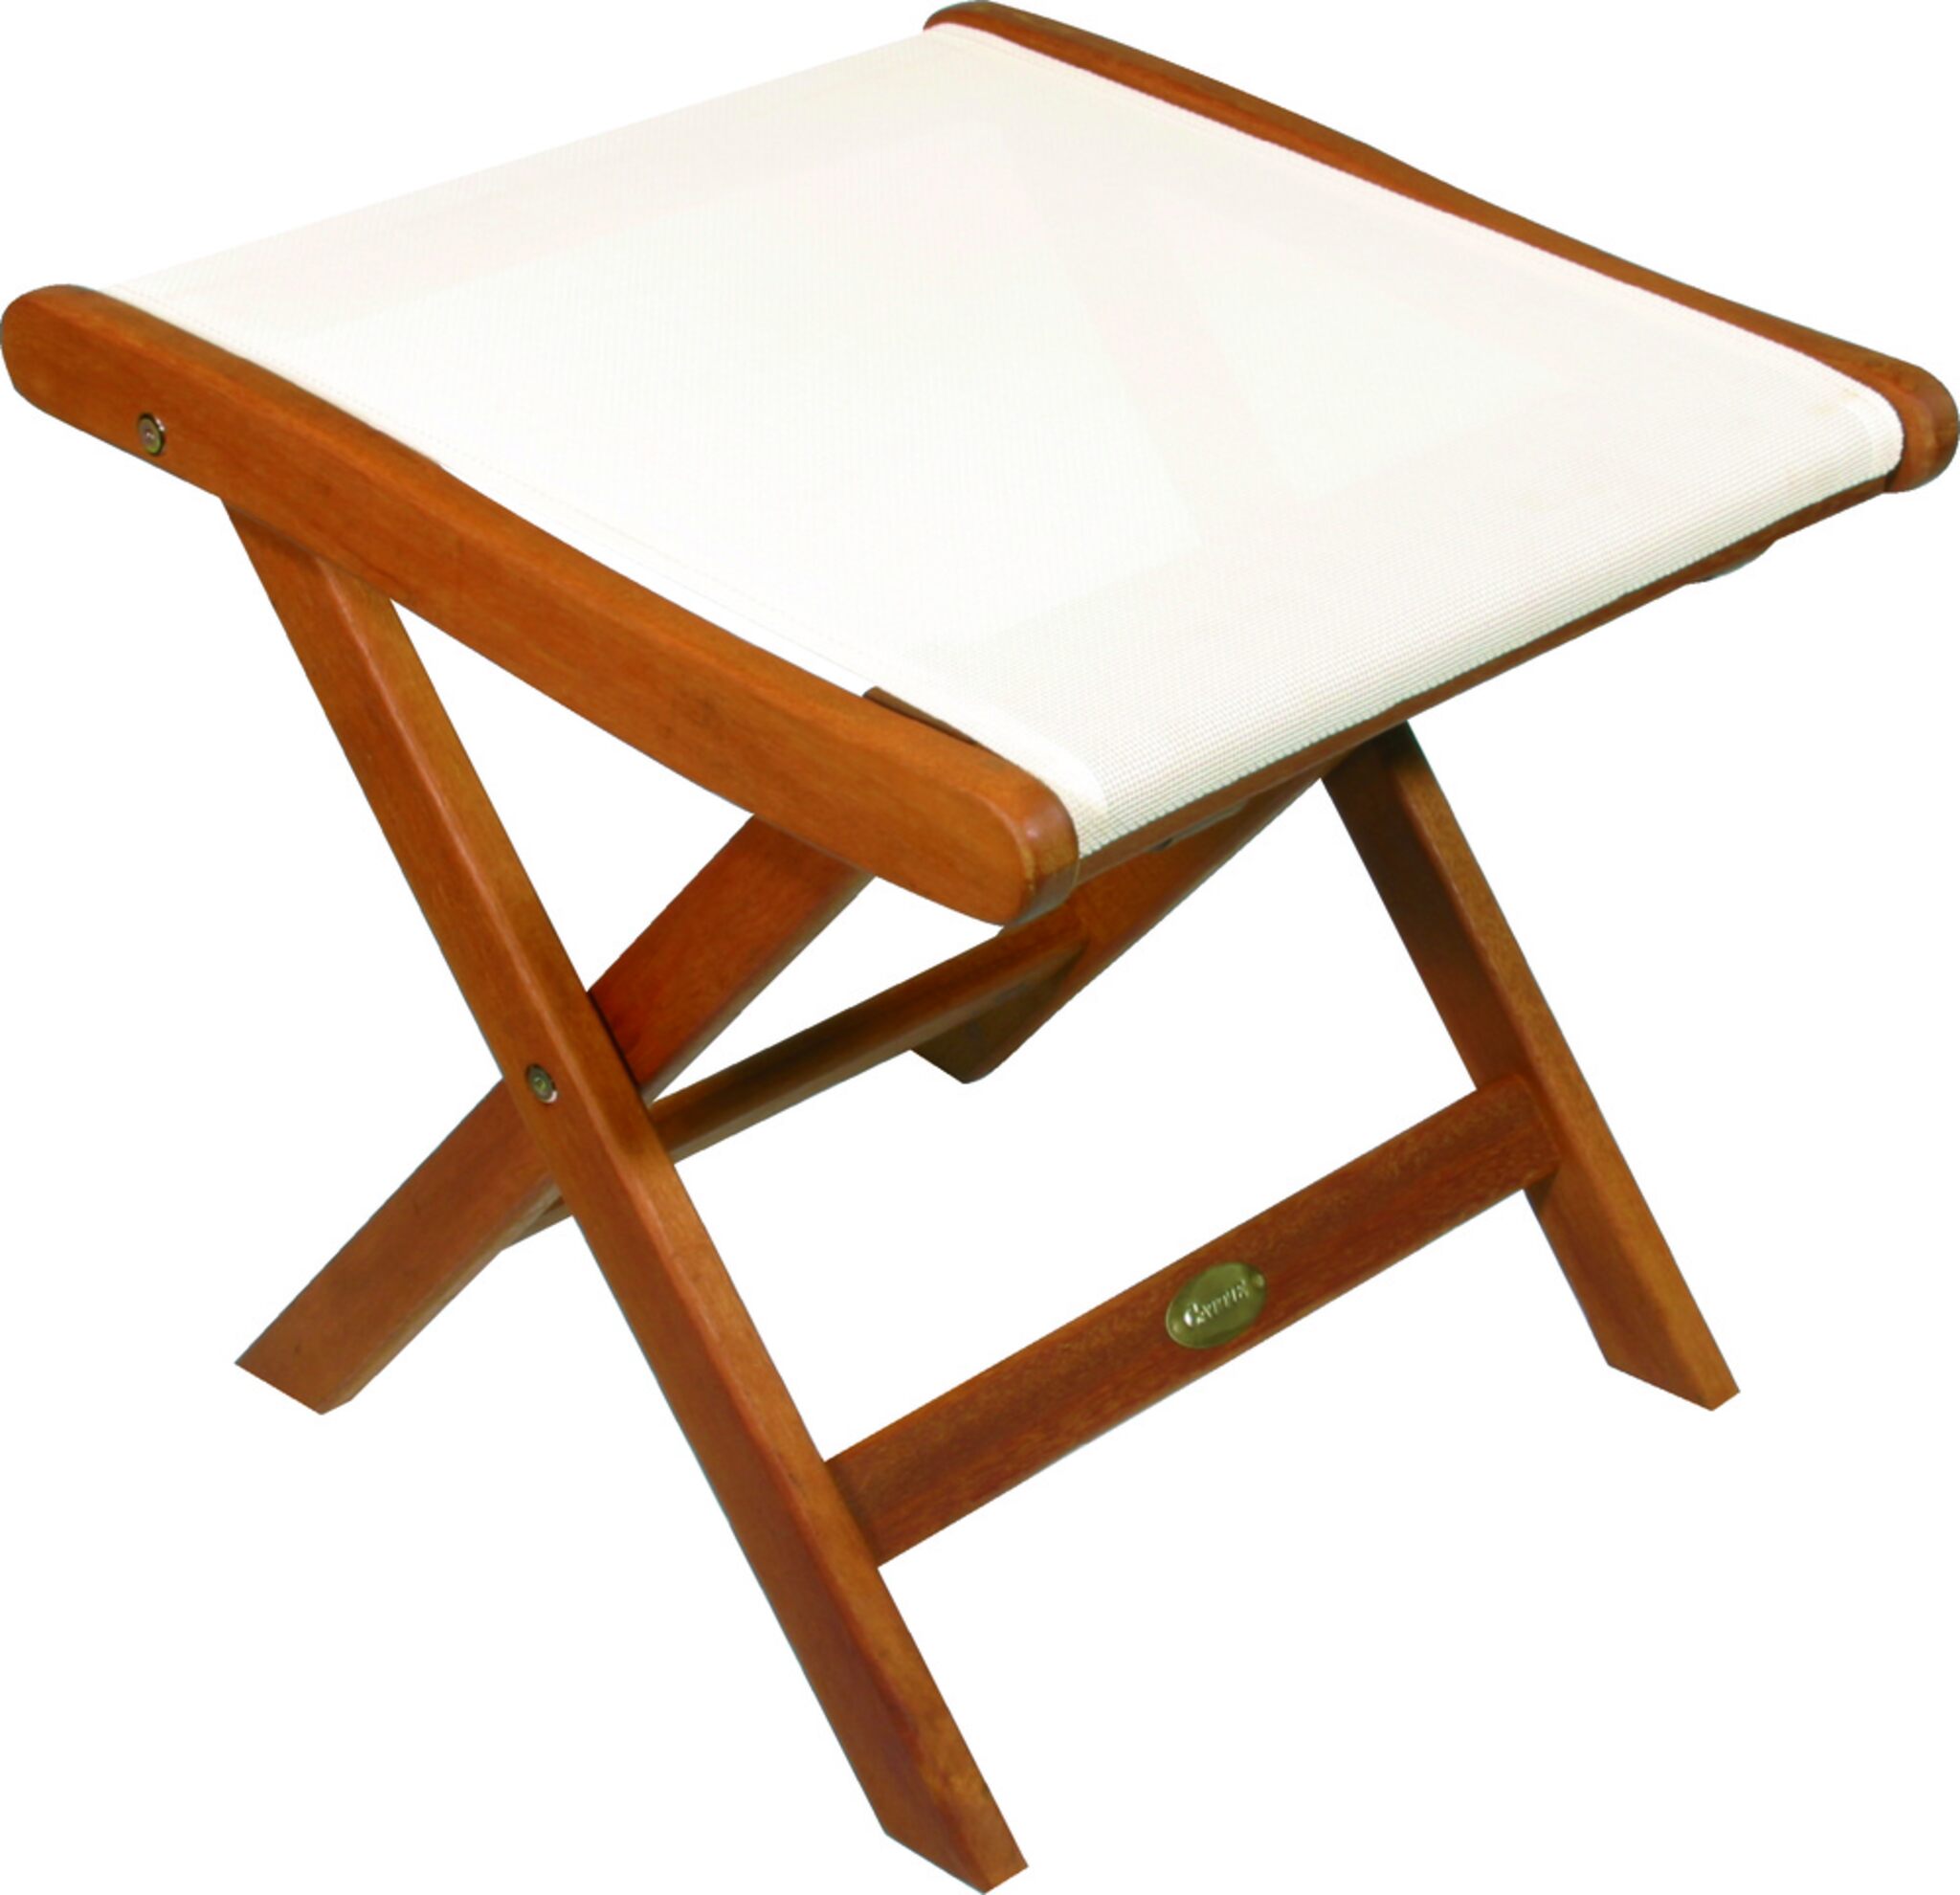 awn folding stool